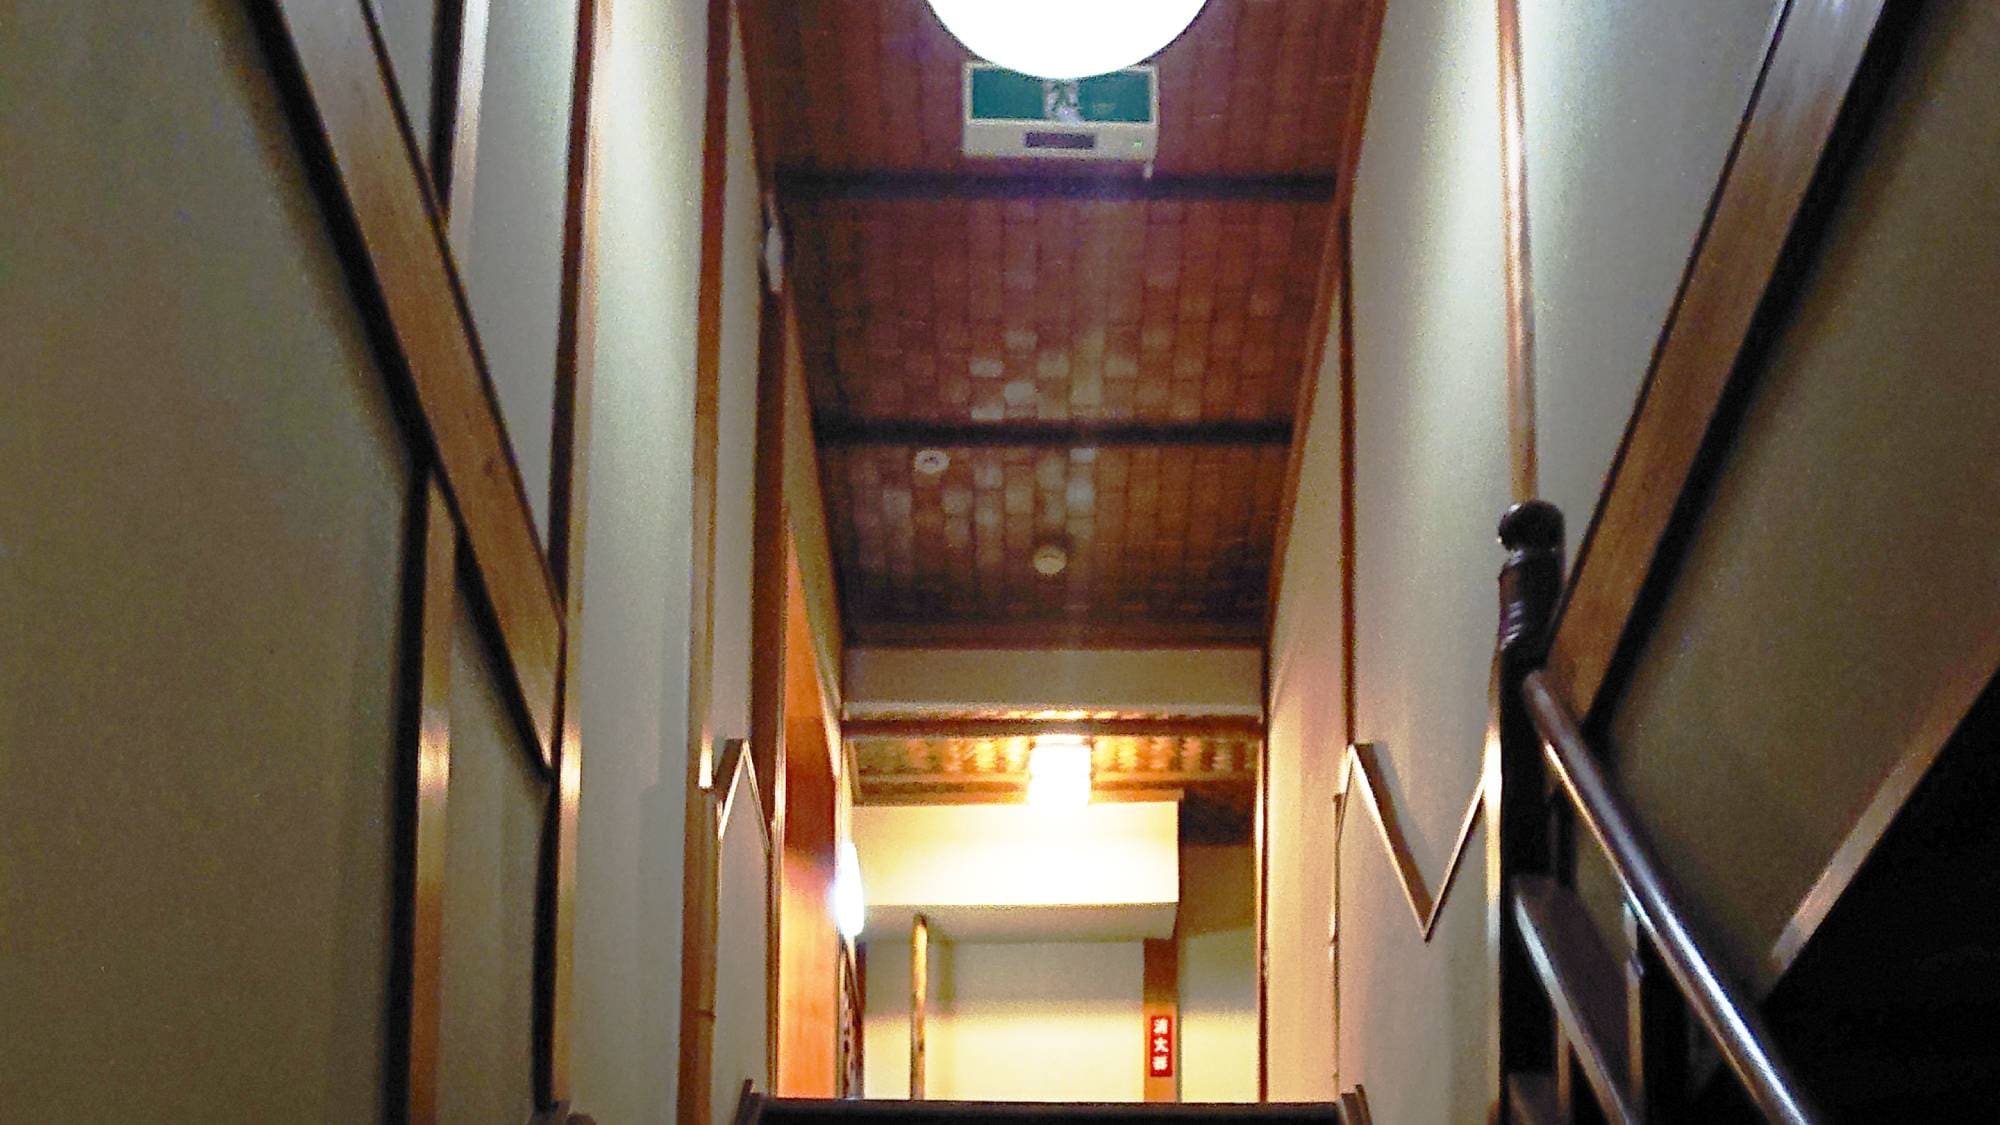 ・ ห้องสไตล์ญี่ปุ่นพร้อม 10 เสื่อทาทามิ (บันได)